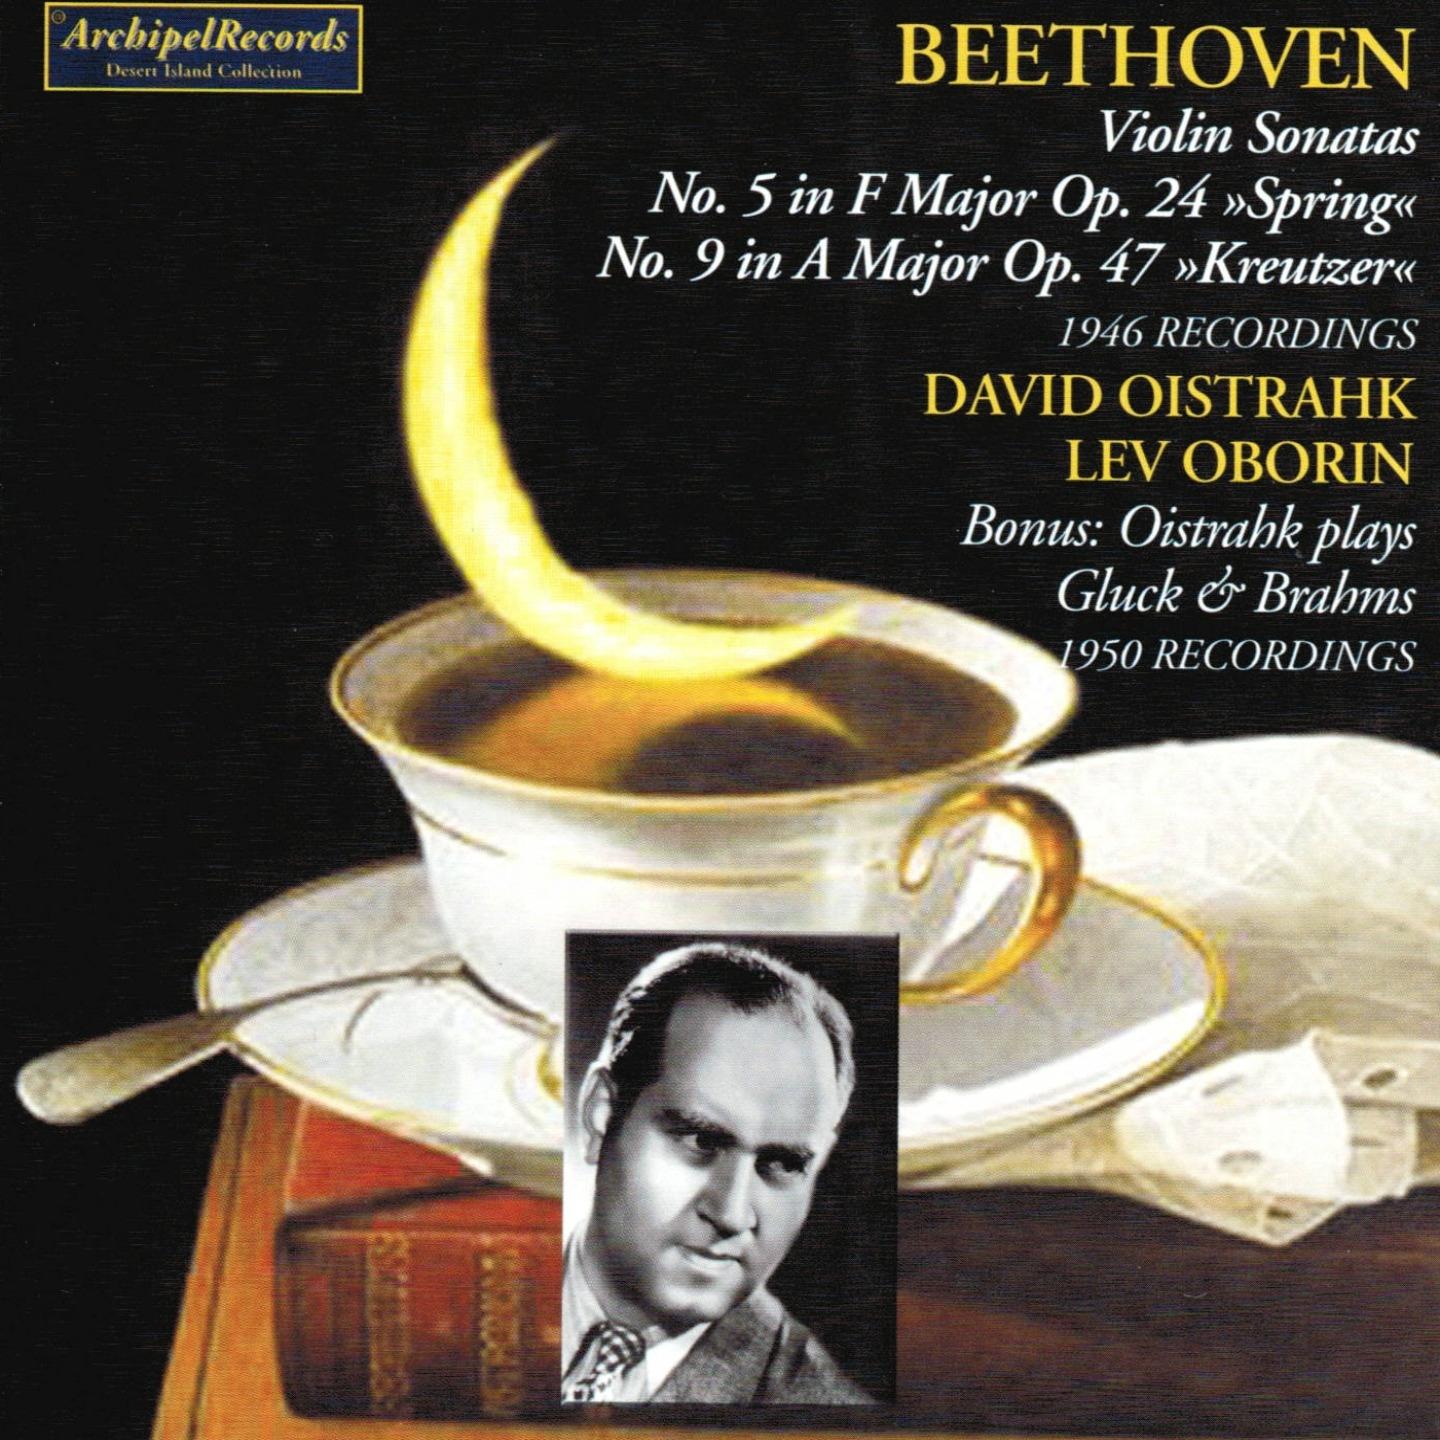 Ludwig Van Beethoven : Violon Sonatas No. 5 Springs and No. 9 Kreutzer